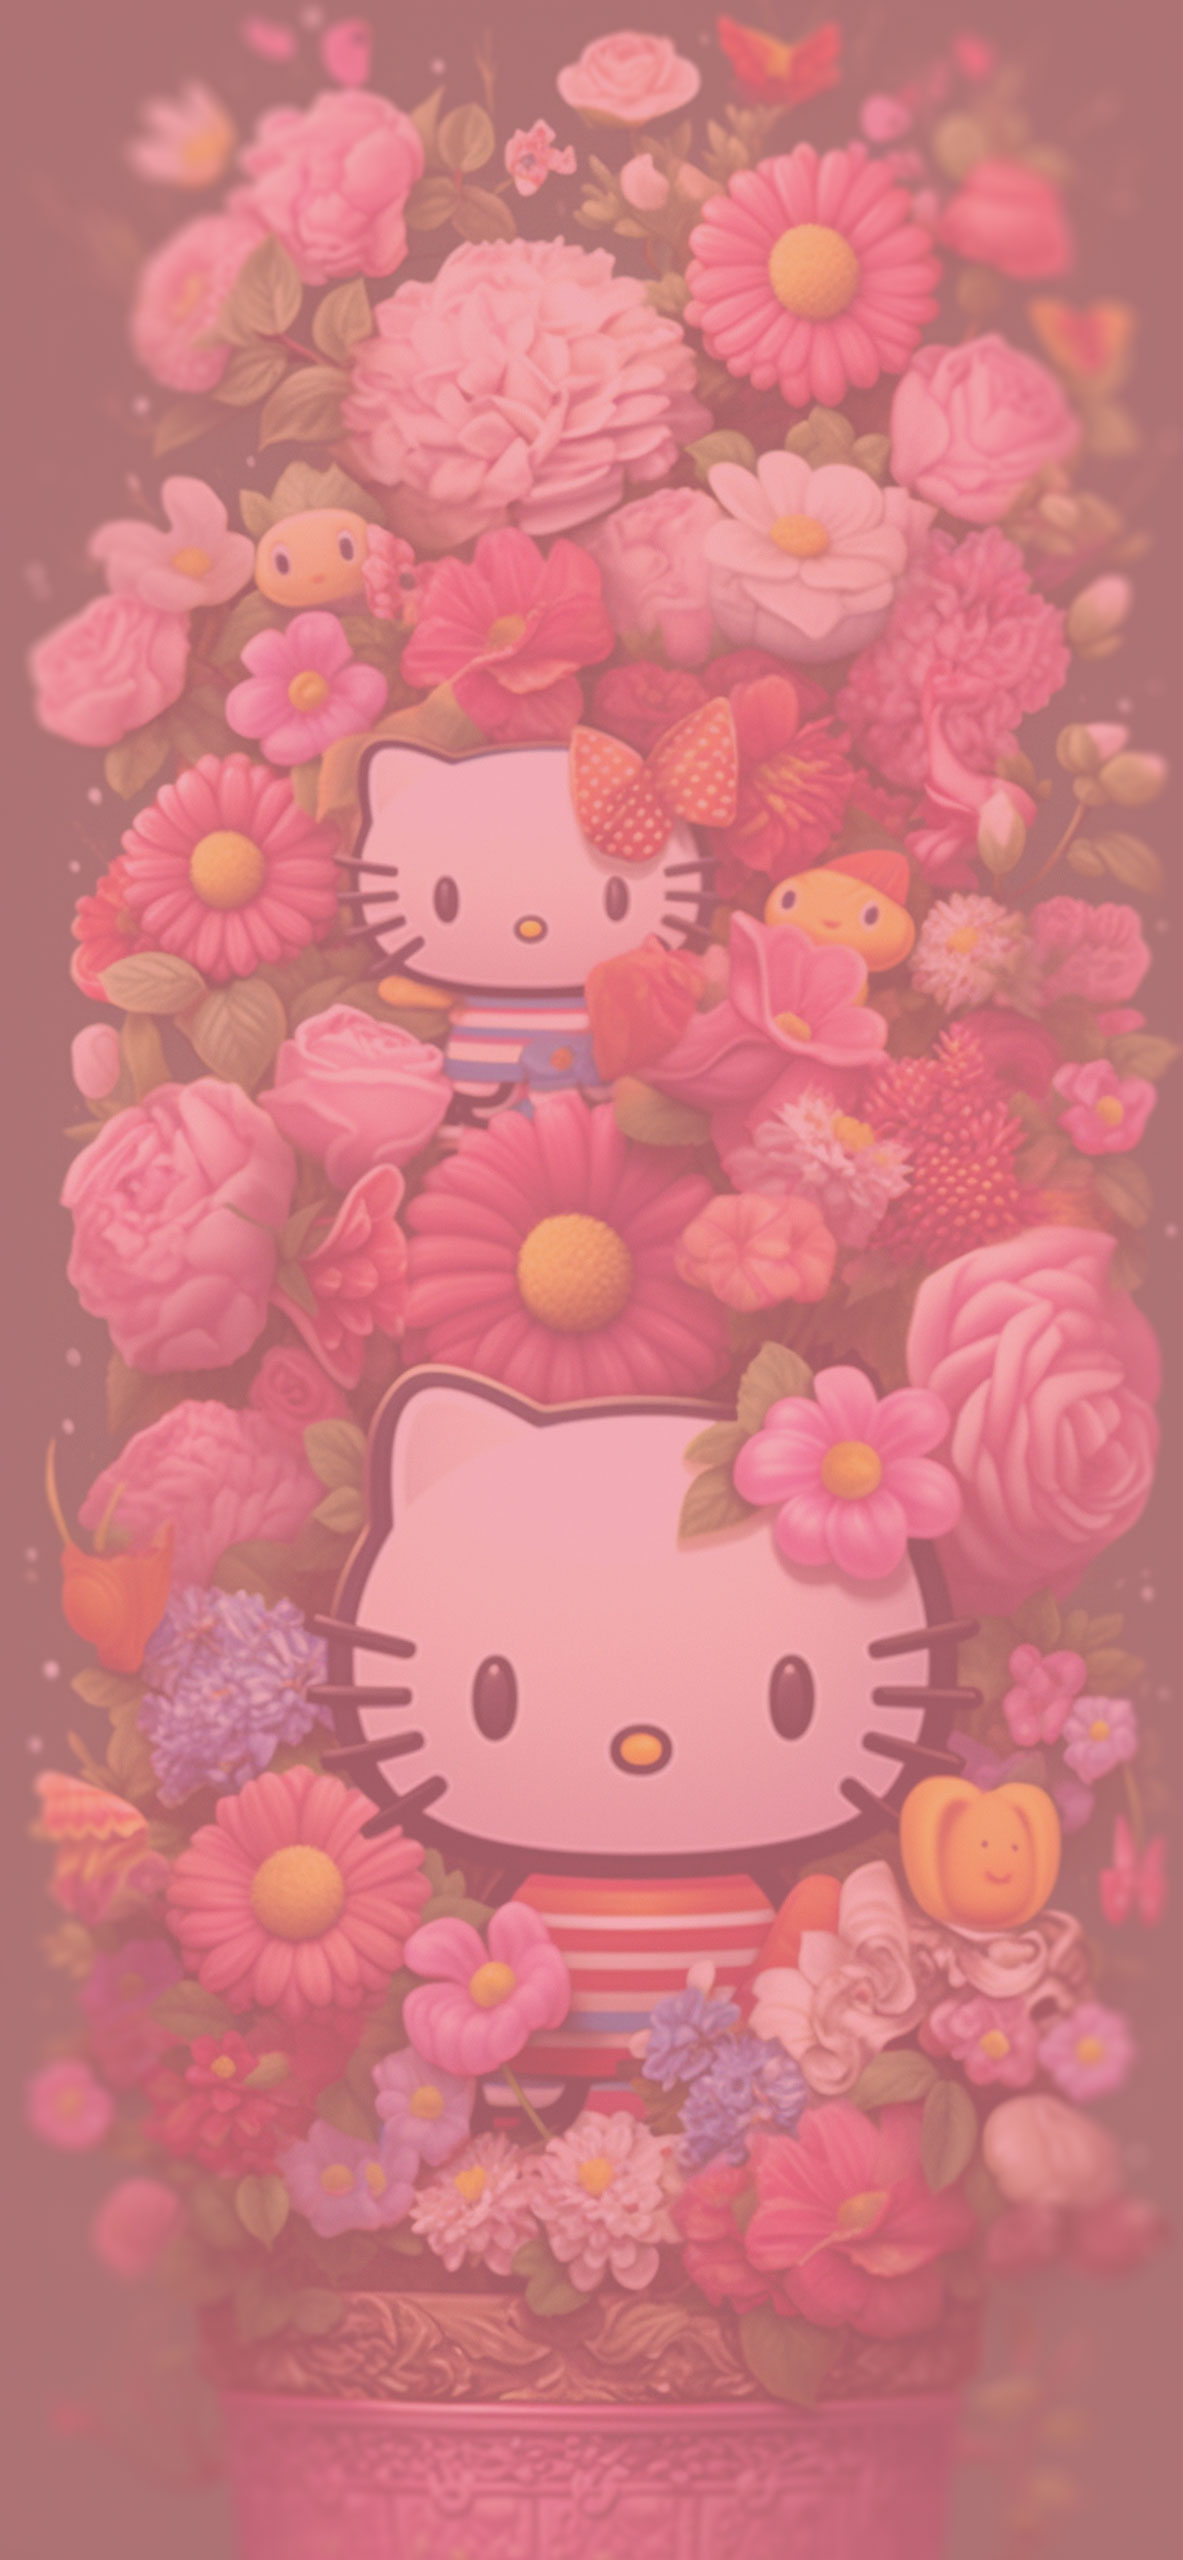 Hello Kitty in flowerpot art wallpaper Hello Kitty in flowerpo